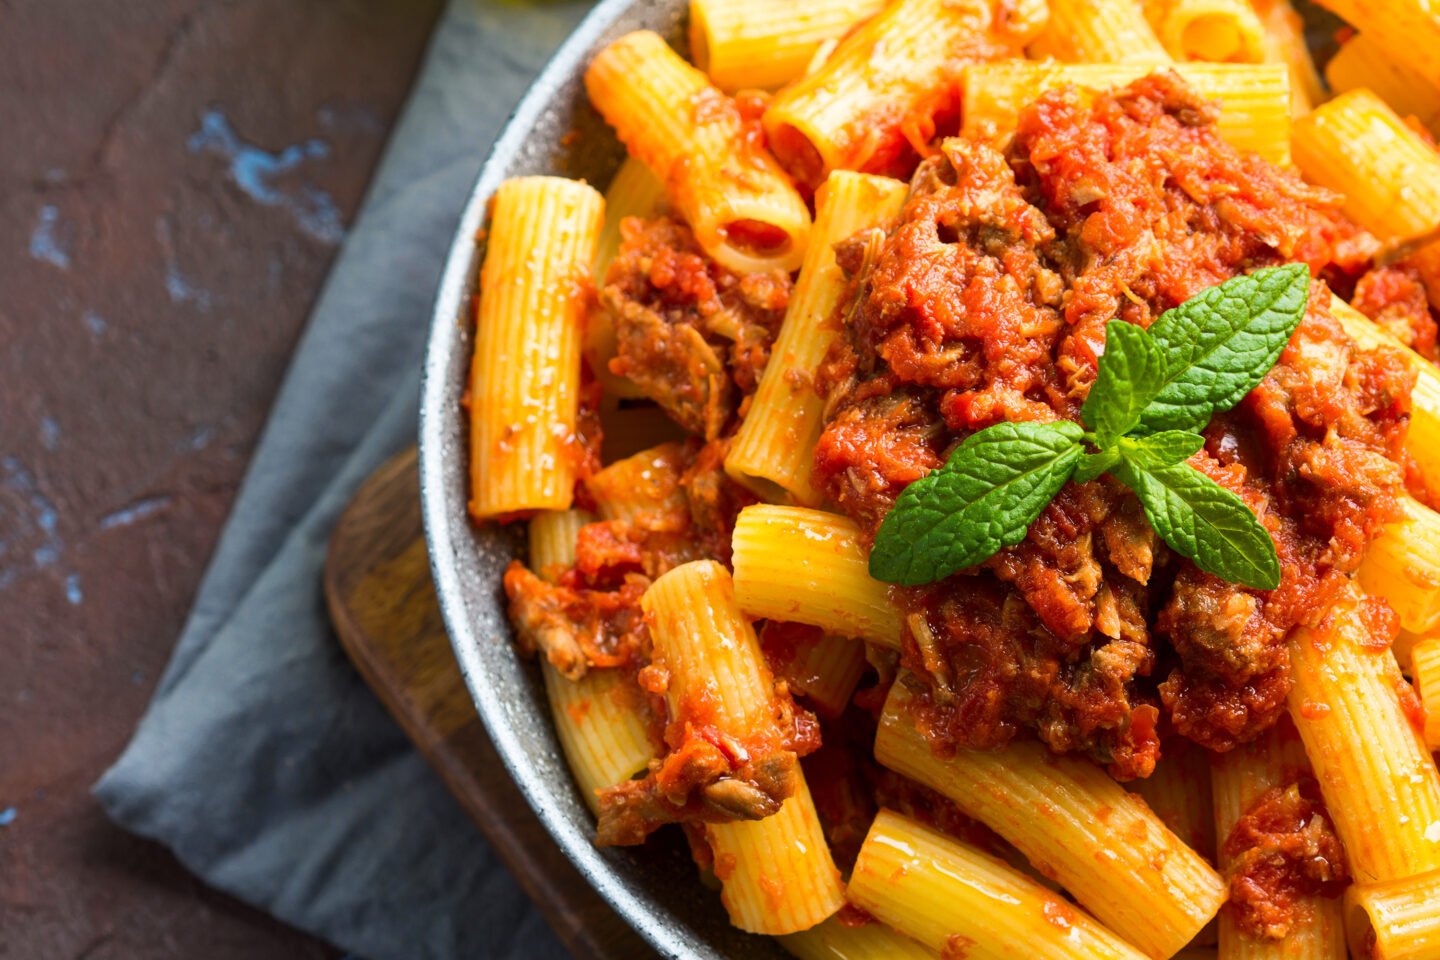 ziti pasta with italian ragu sauce